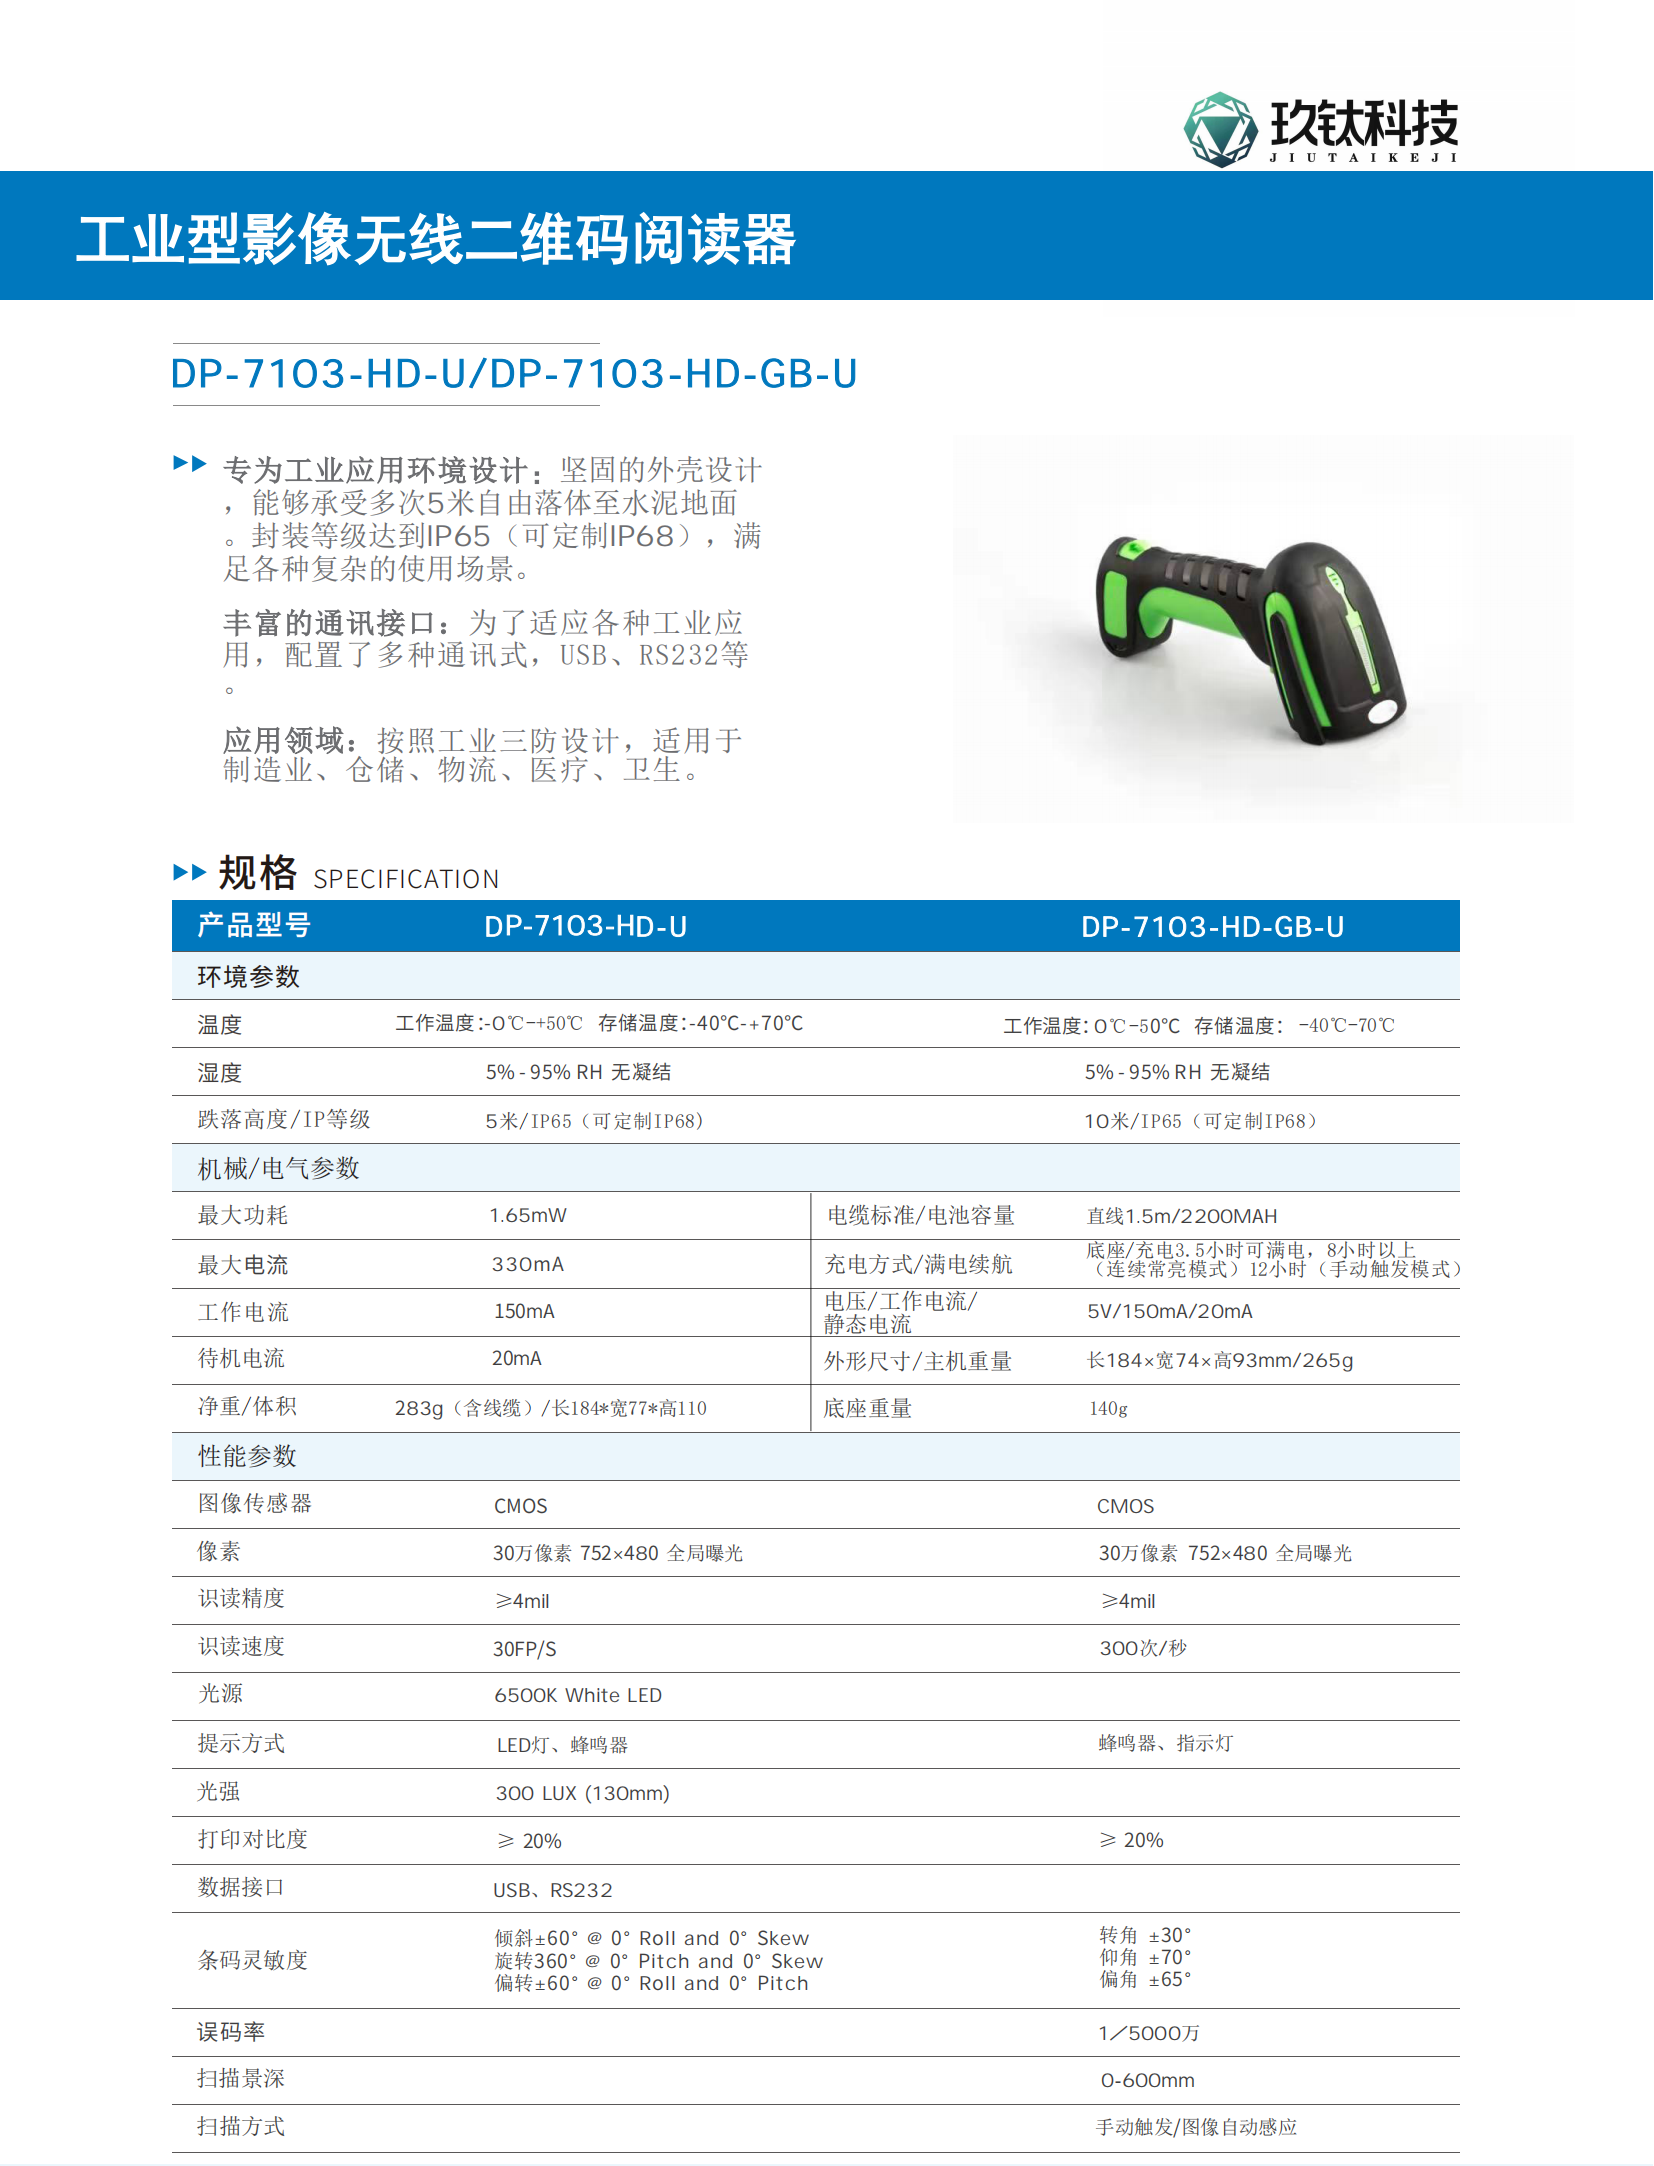 扫码枪-DP-7103-HD-U DP-7103-HD-GB-U 产品规格书_00.png